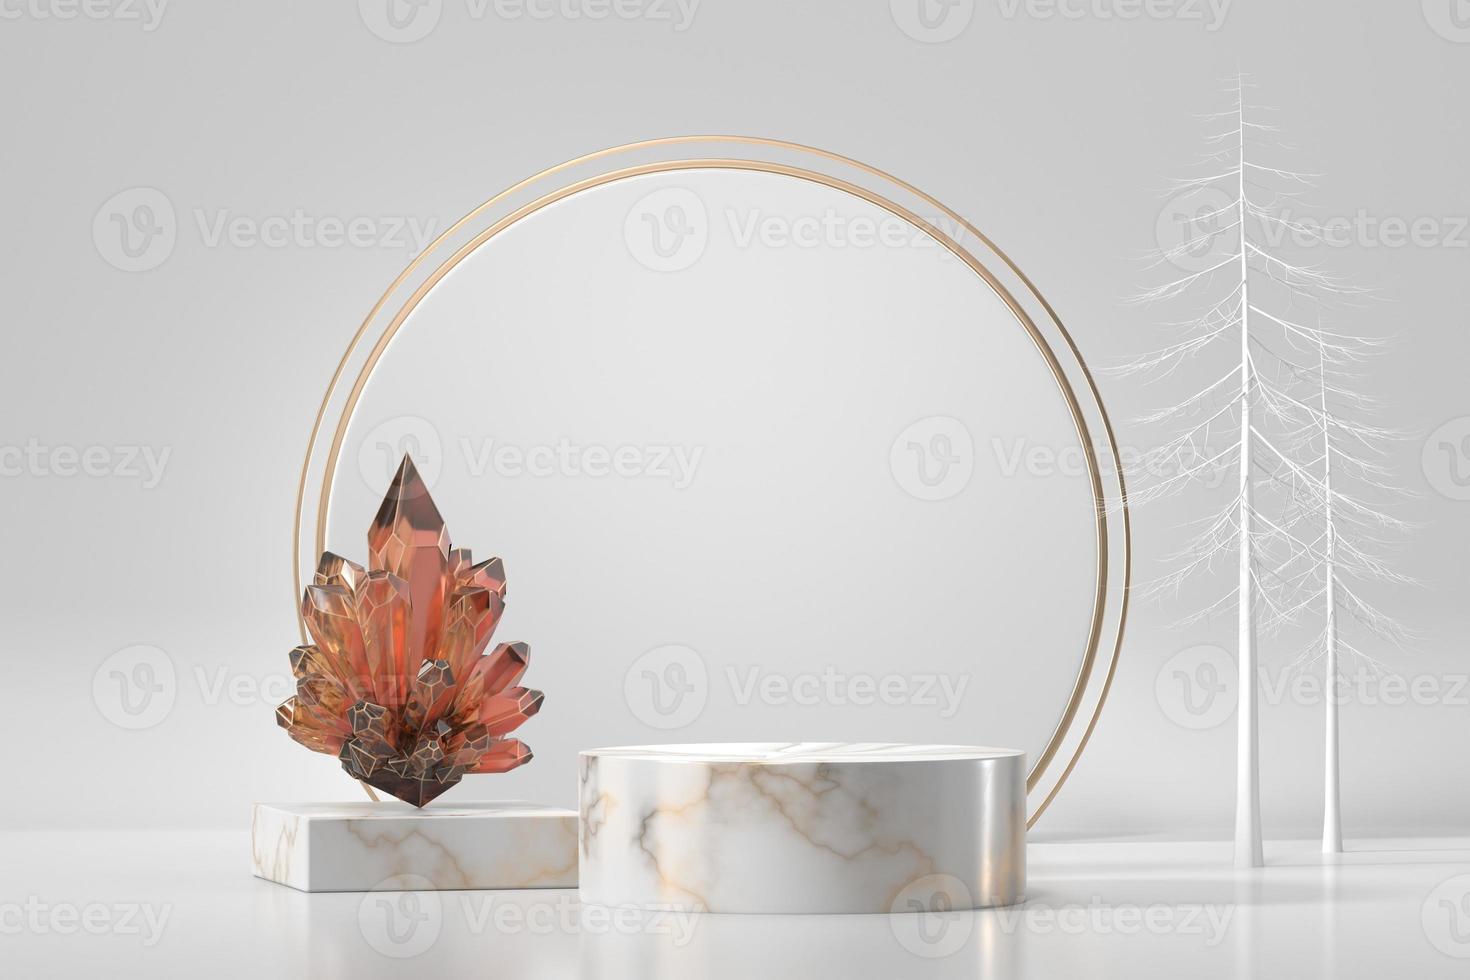 pódio de mármore para vitrine de produtos com cristal em fundo branco, renderização em 3D foto